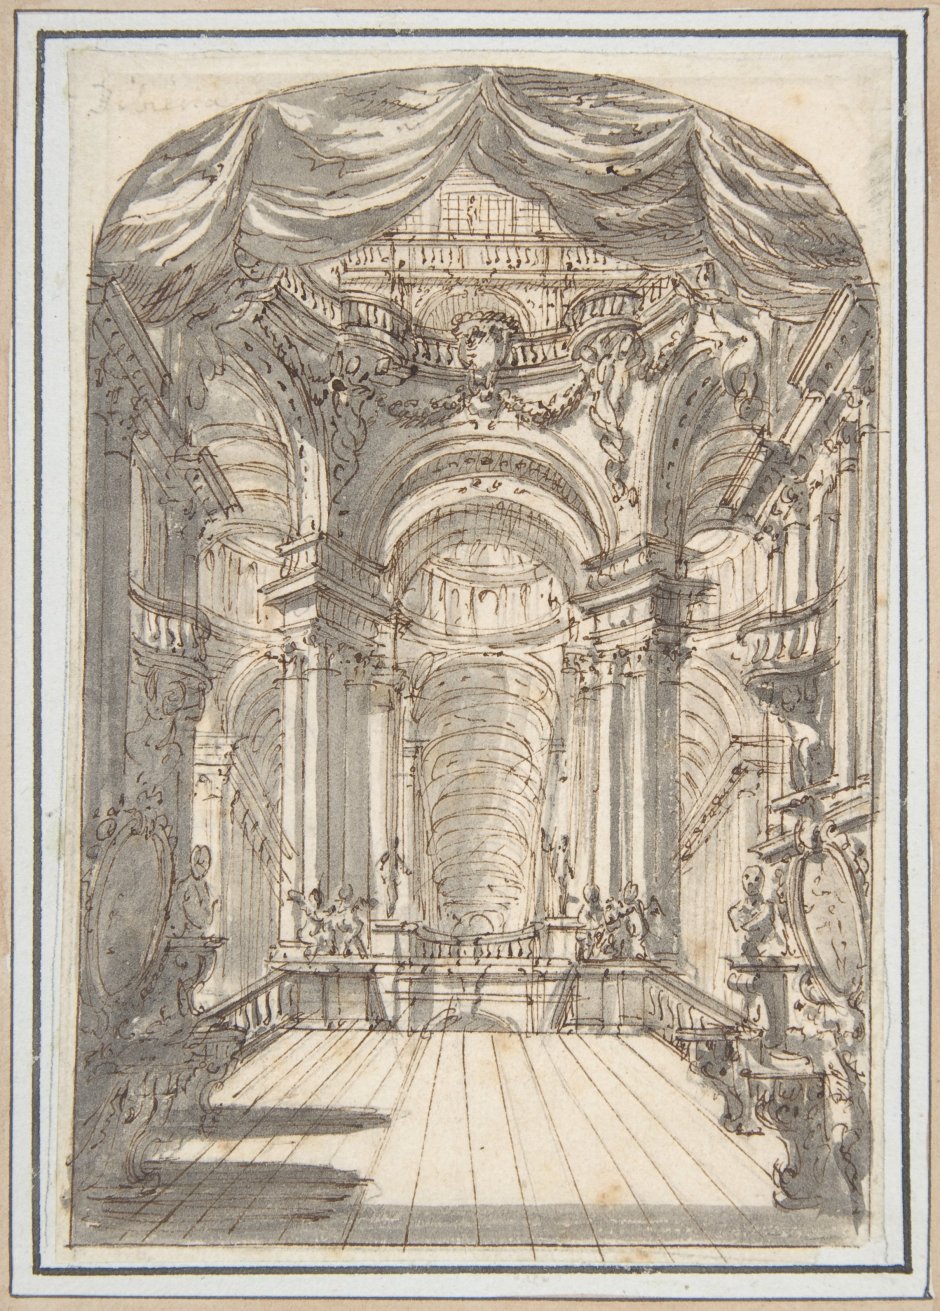 Спальня императора, дворец Фонтенбло